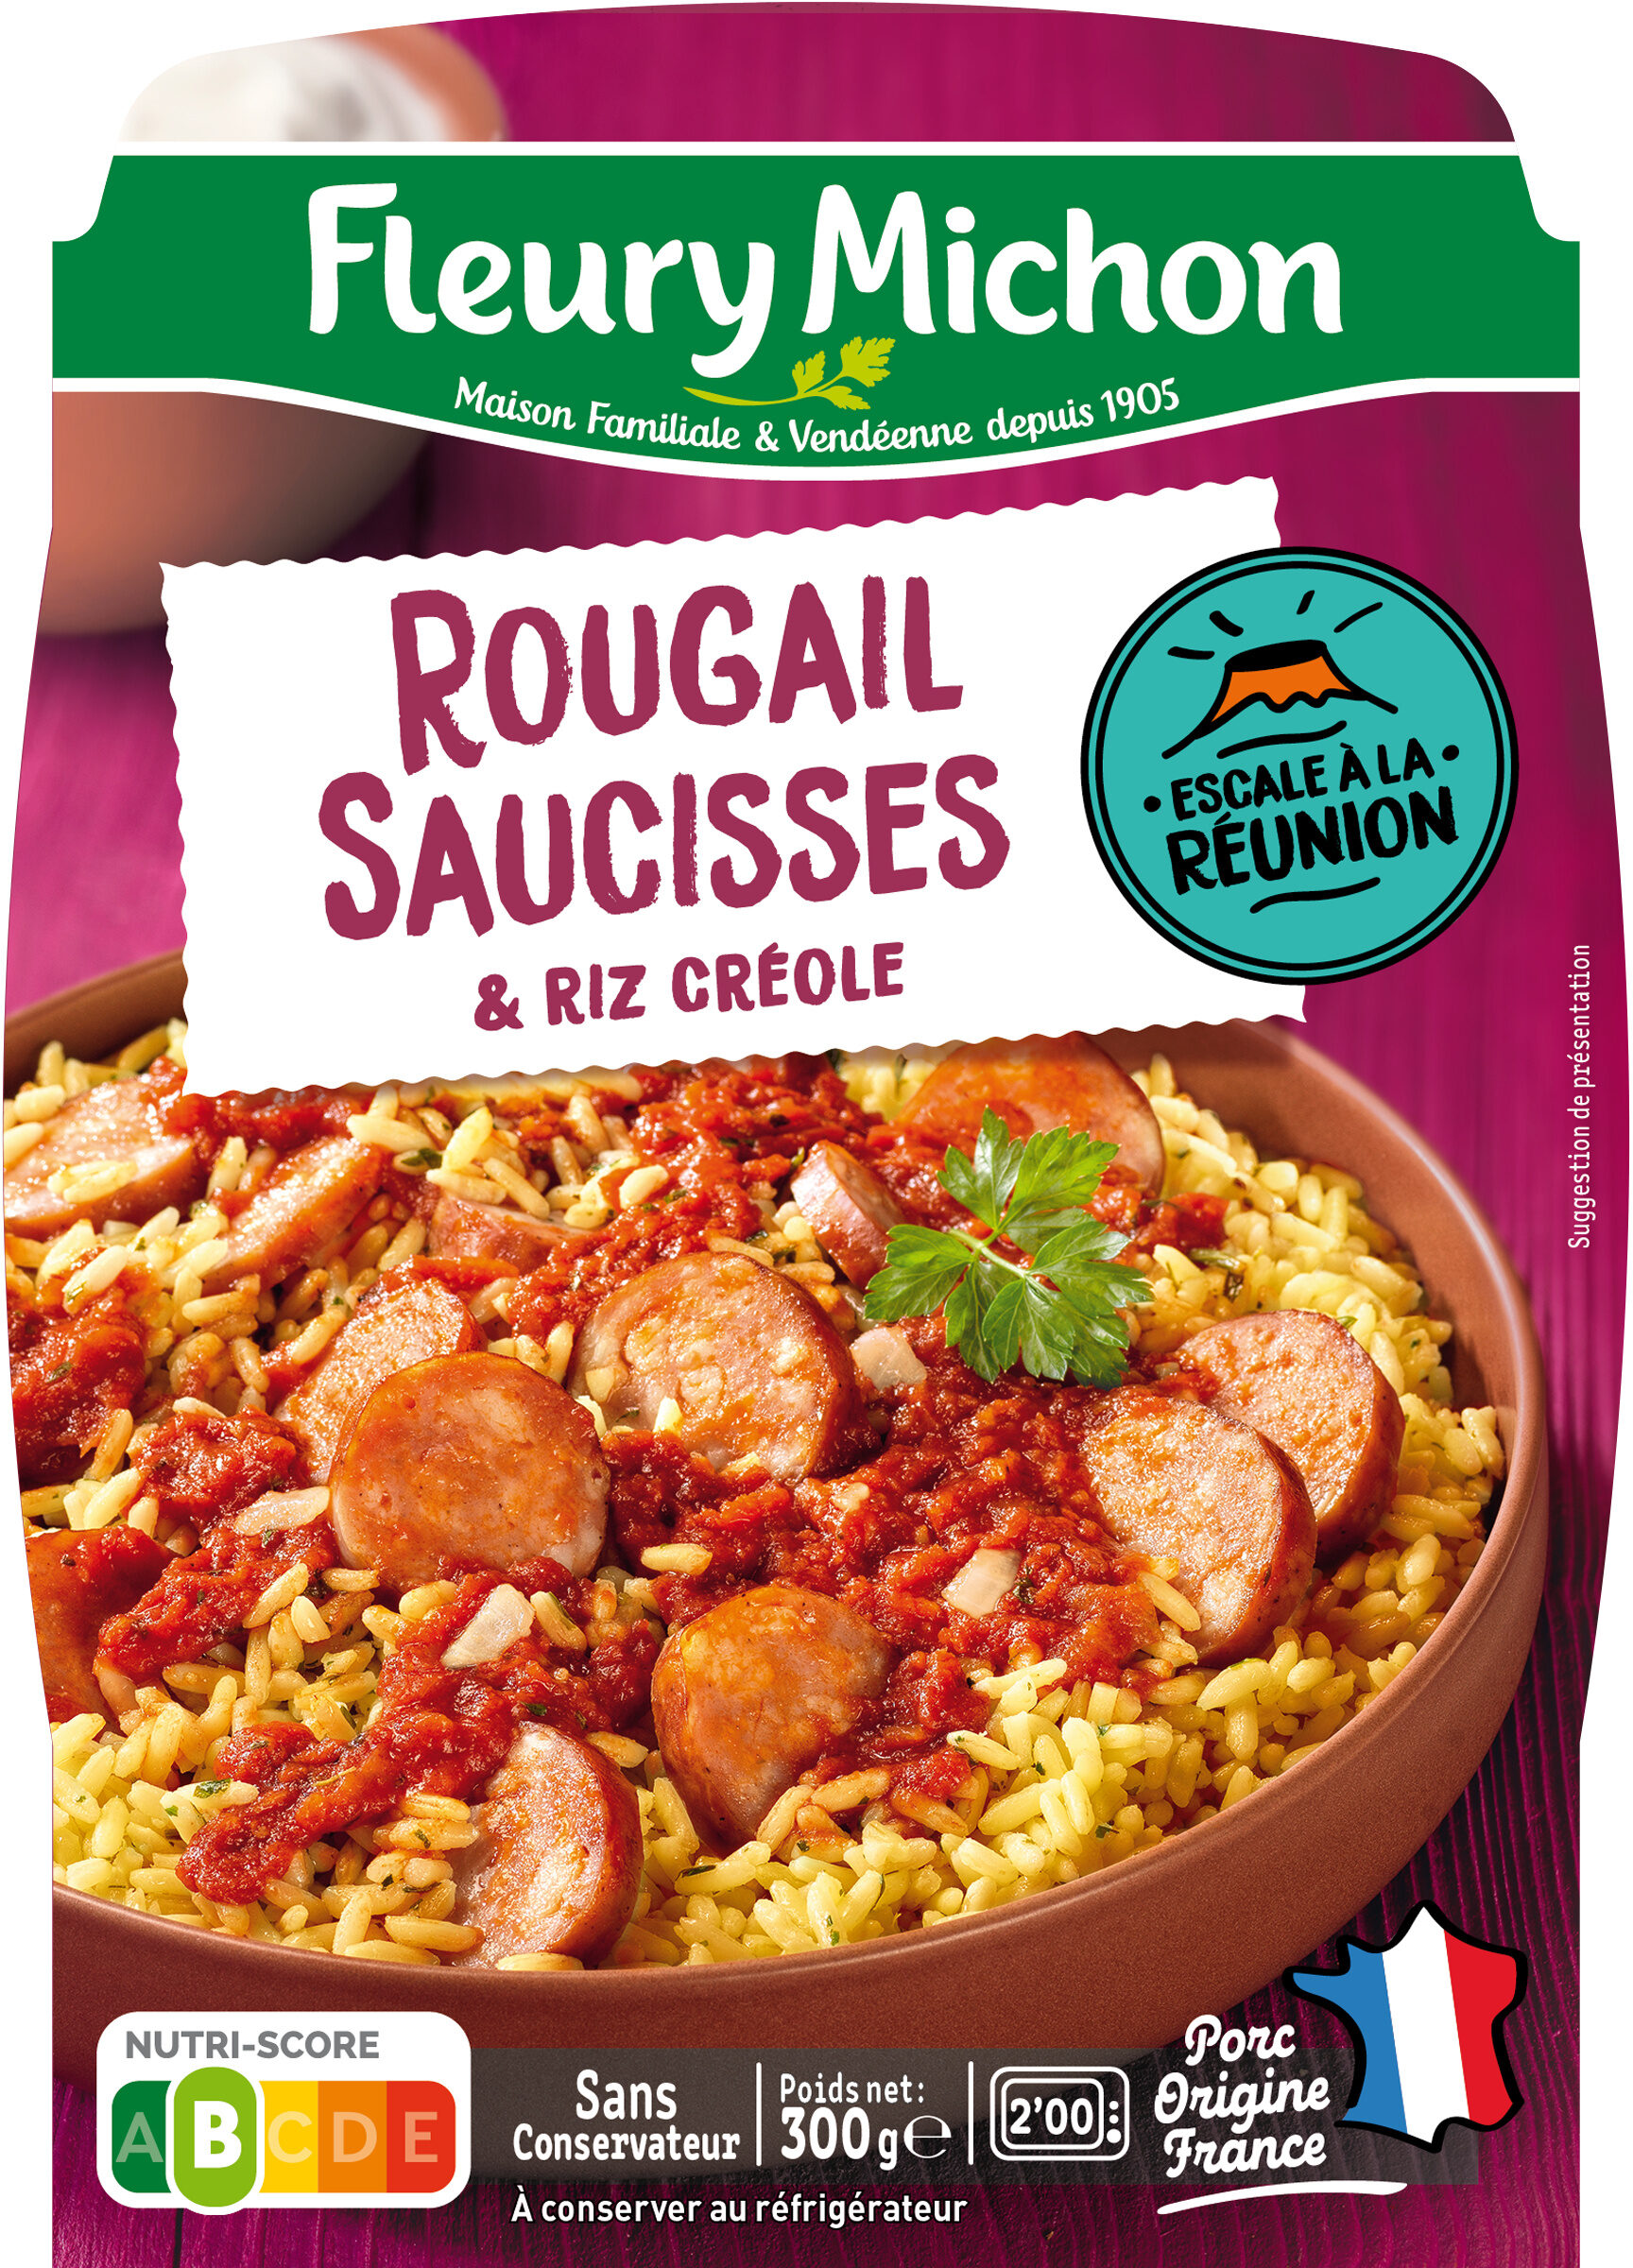 Le Rougail Saucisse et son riz créole - Product - fr